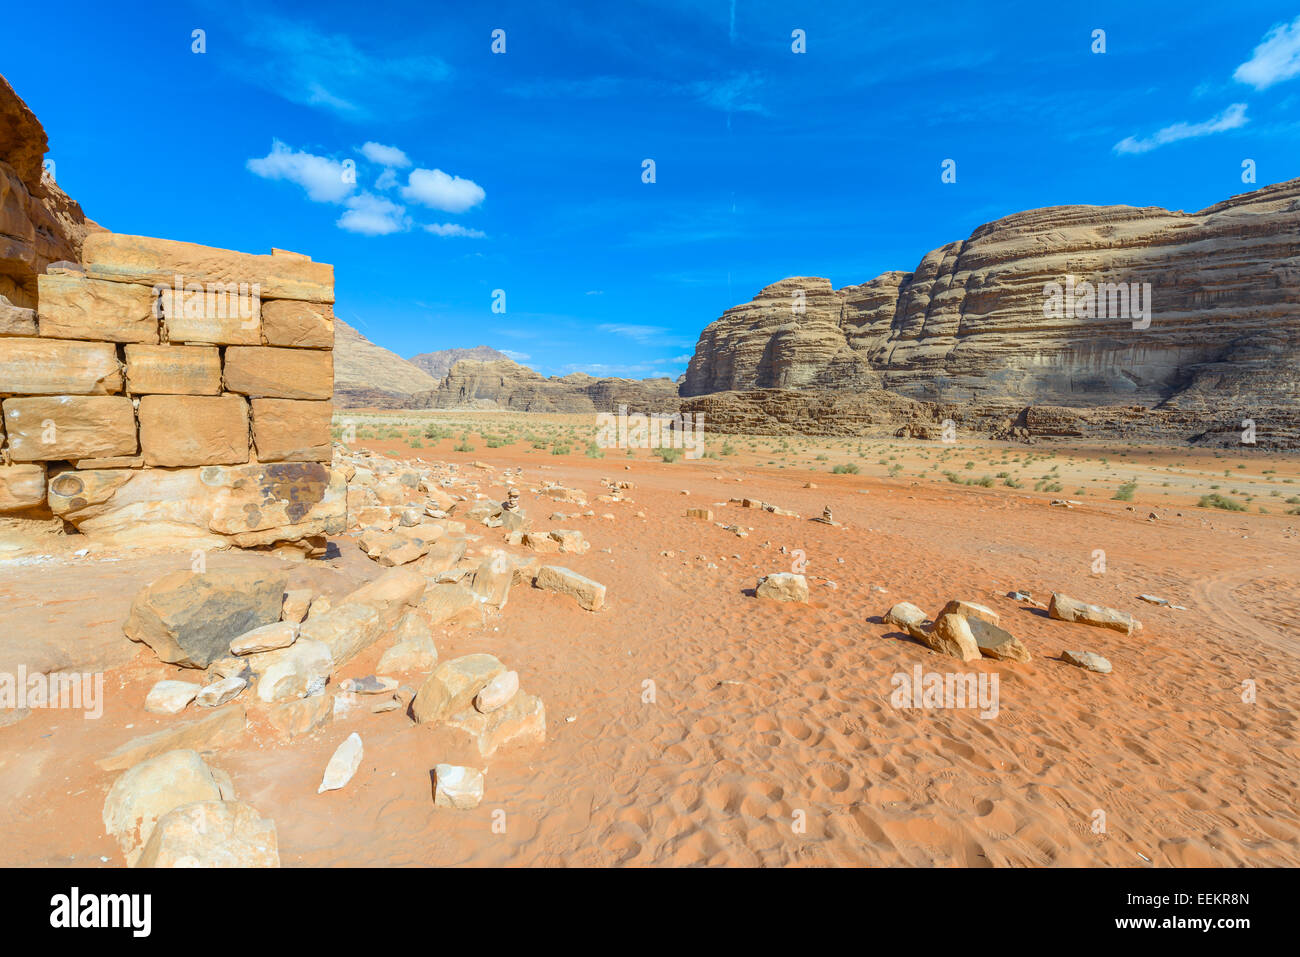 Ruins of  Lawrence of Arabia’s House in Wadi Rum desert, Jordan Stock Photo